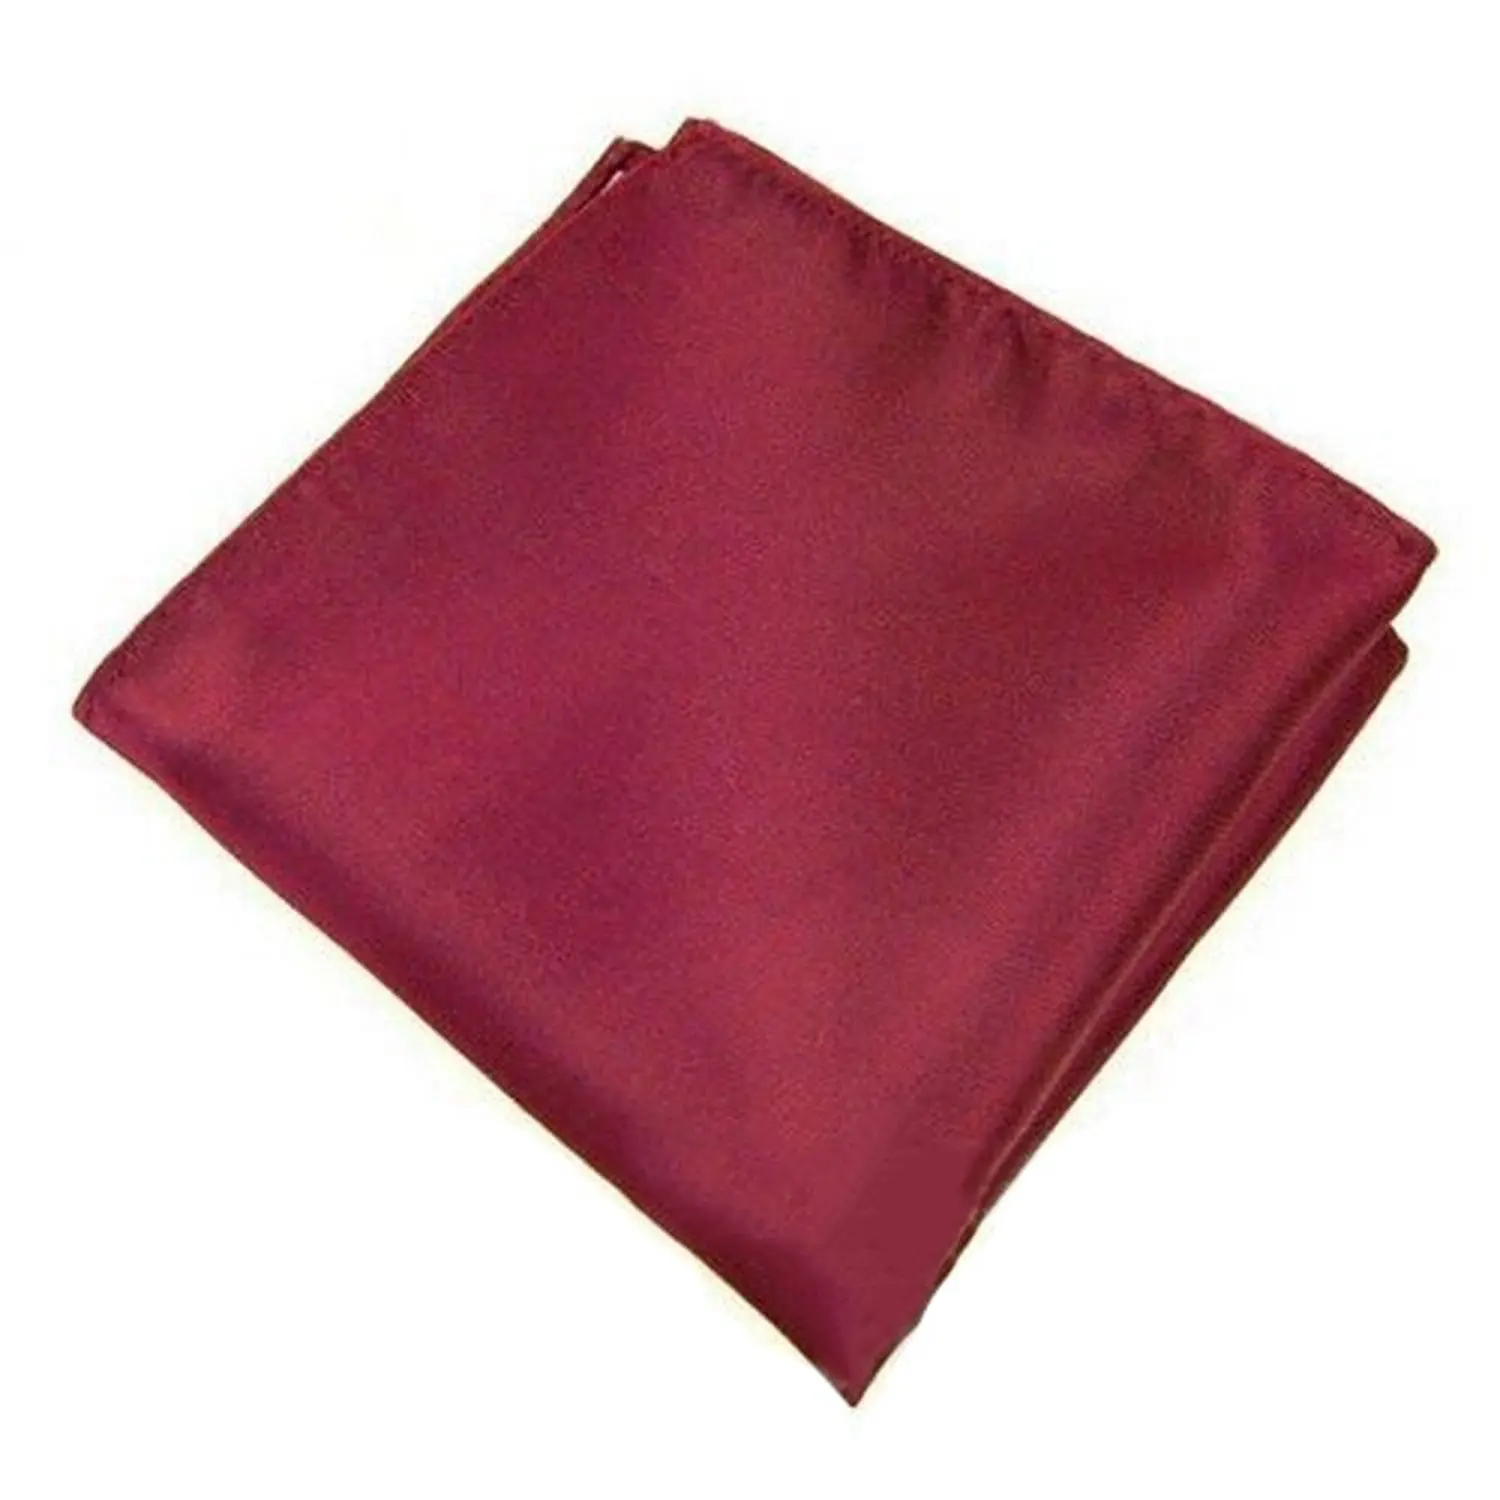 Новый Для мужчин карман Hanky Однотонные Свадебная вечеринка квадрат hankerchief (темно-красный)